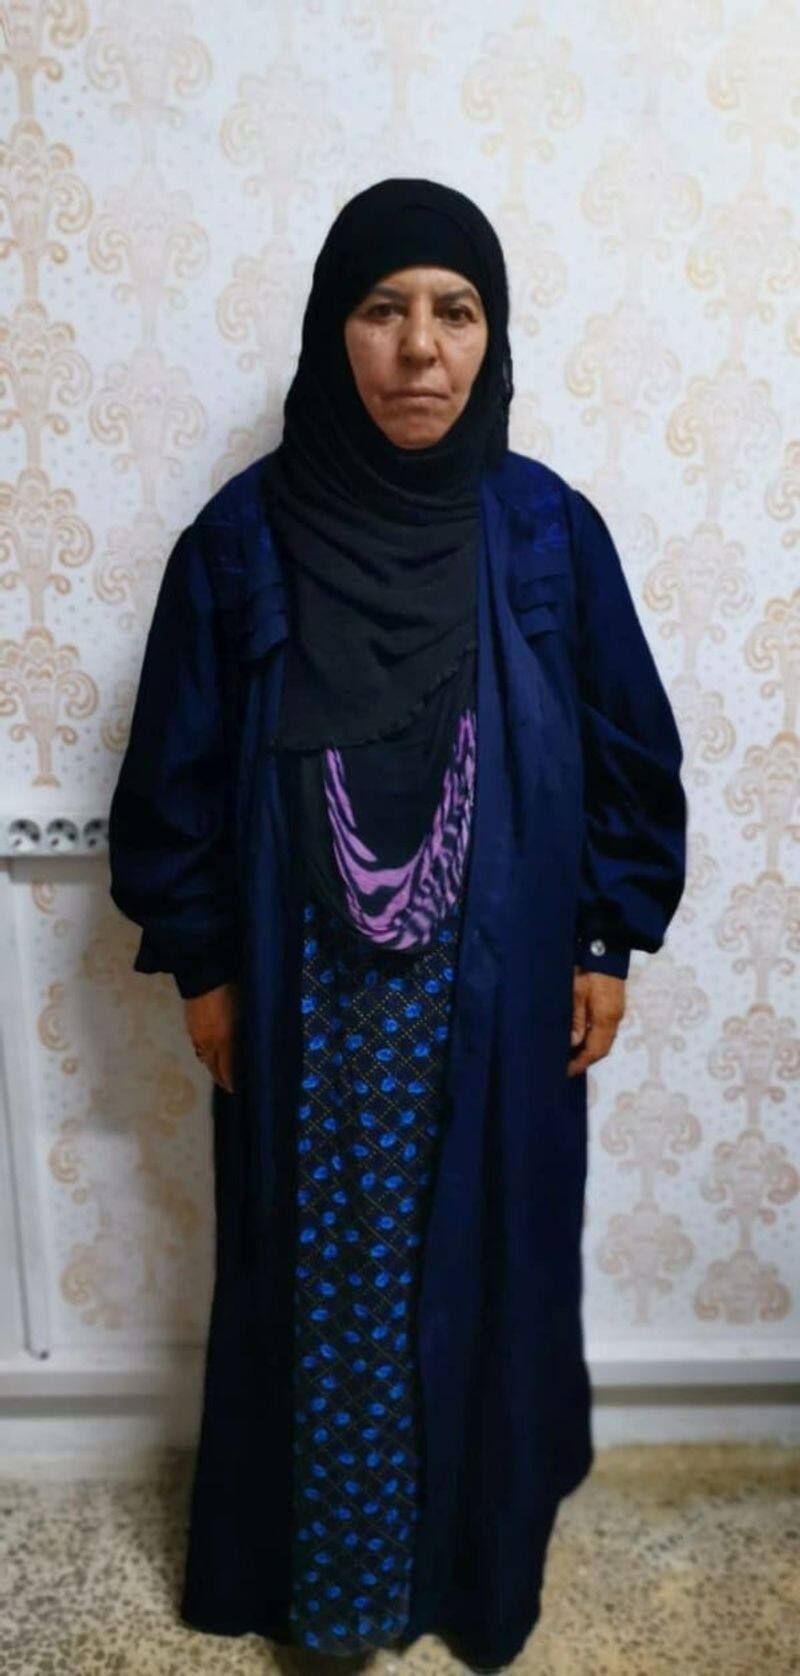 isis leader al Baghdadi sister rasmiya also arrest by Turkic